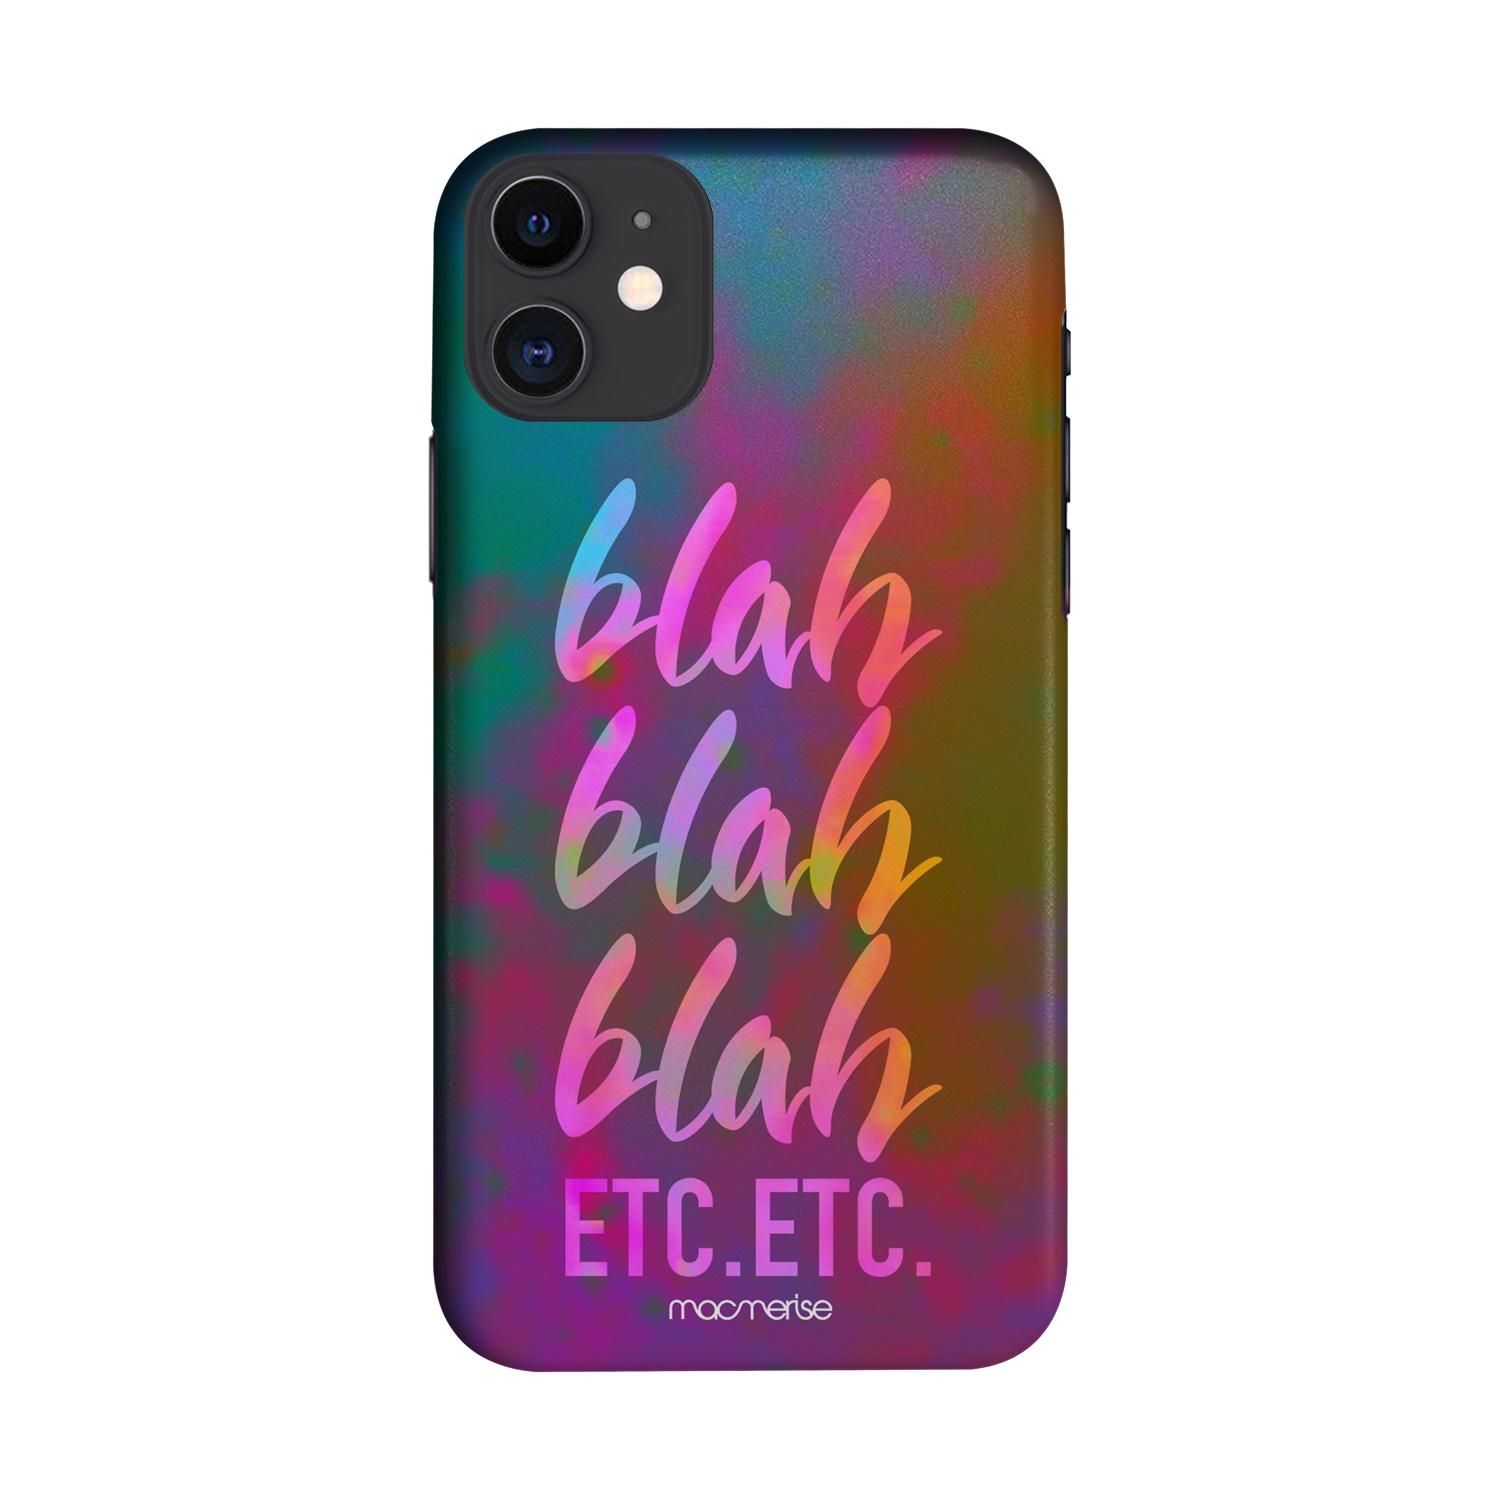 Buy Blah Blah - Sleek Phone Case for iPhone 11 Online